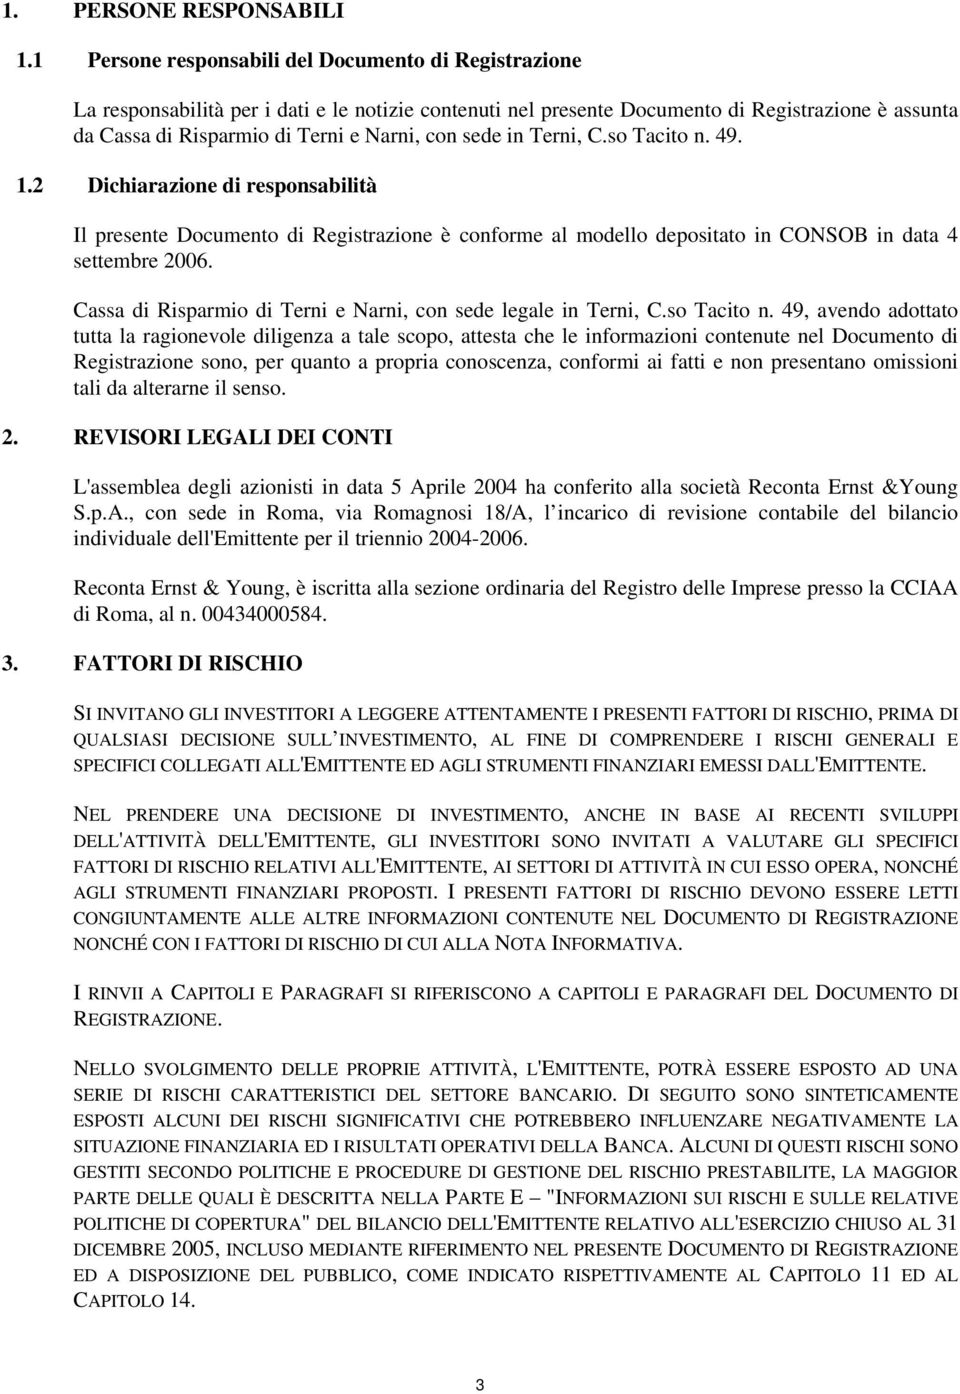 sede in Terni, C.so Tacito n. 49. 1.2 Dichiarazione di responsabilità Il presente Documento di Registrazione è conforme al modello depositato in CONSOB in data 4 settembre 2006.